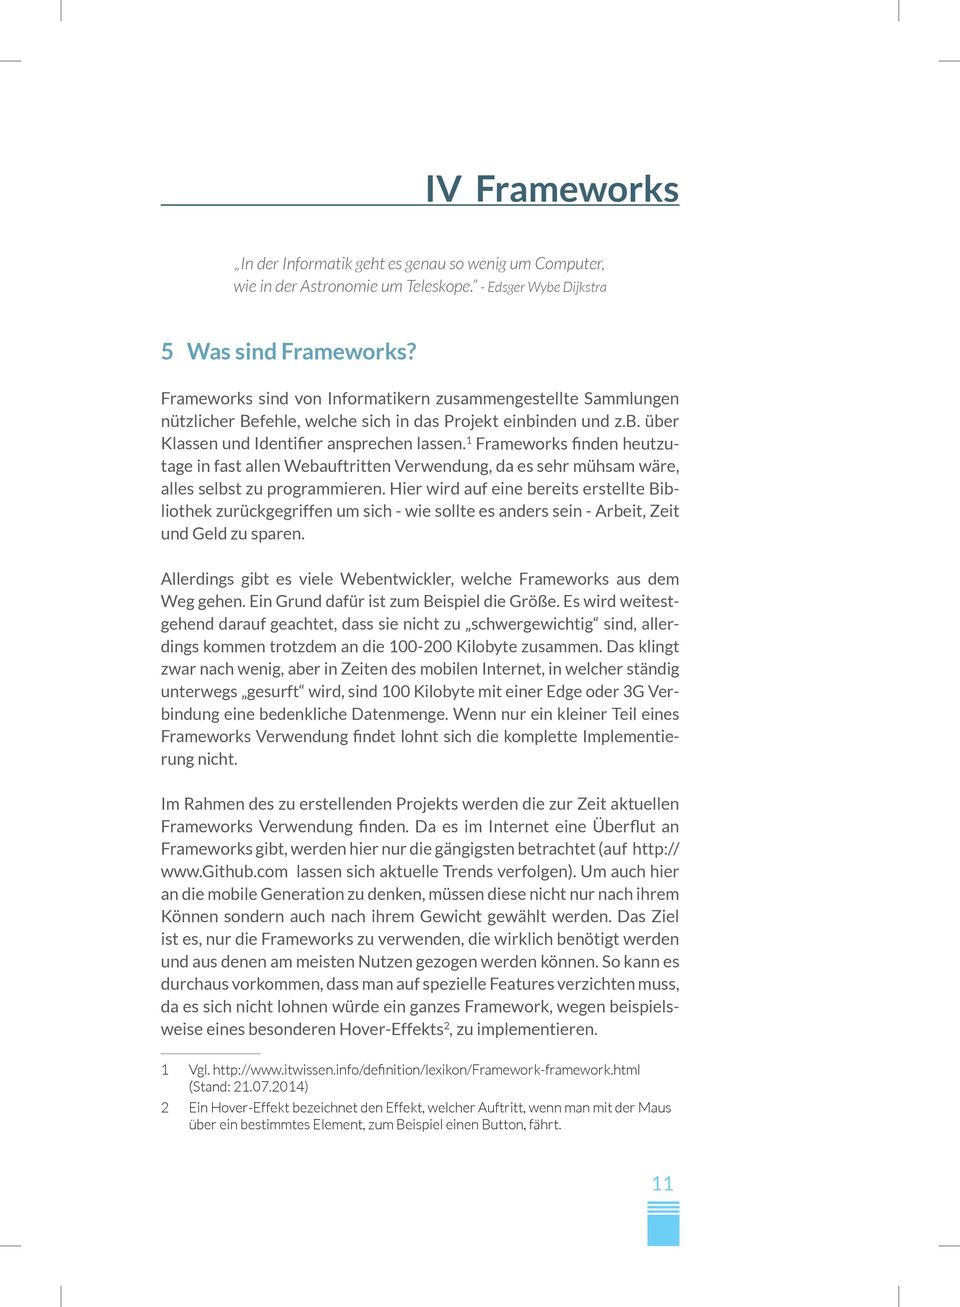 1 Frameworks finden heutzutage in fast allen Webauftritten Verwendung, da es sehr mühsam wäre, alles selbst zu programmieren.